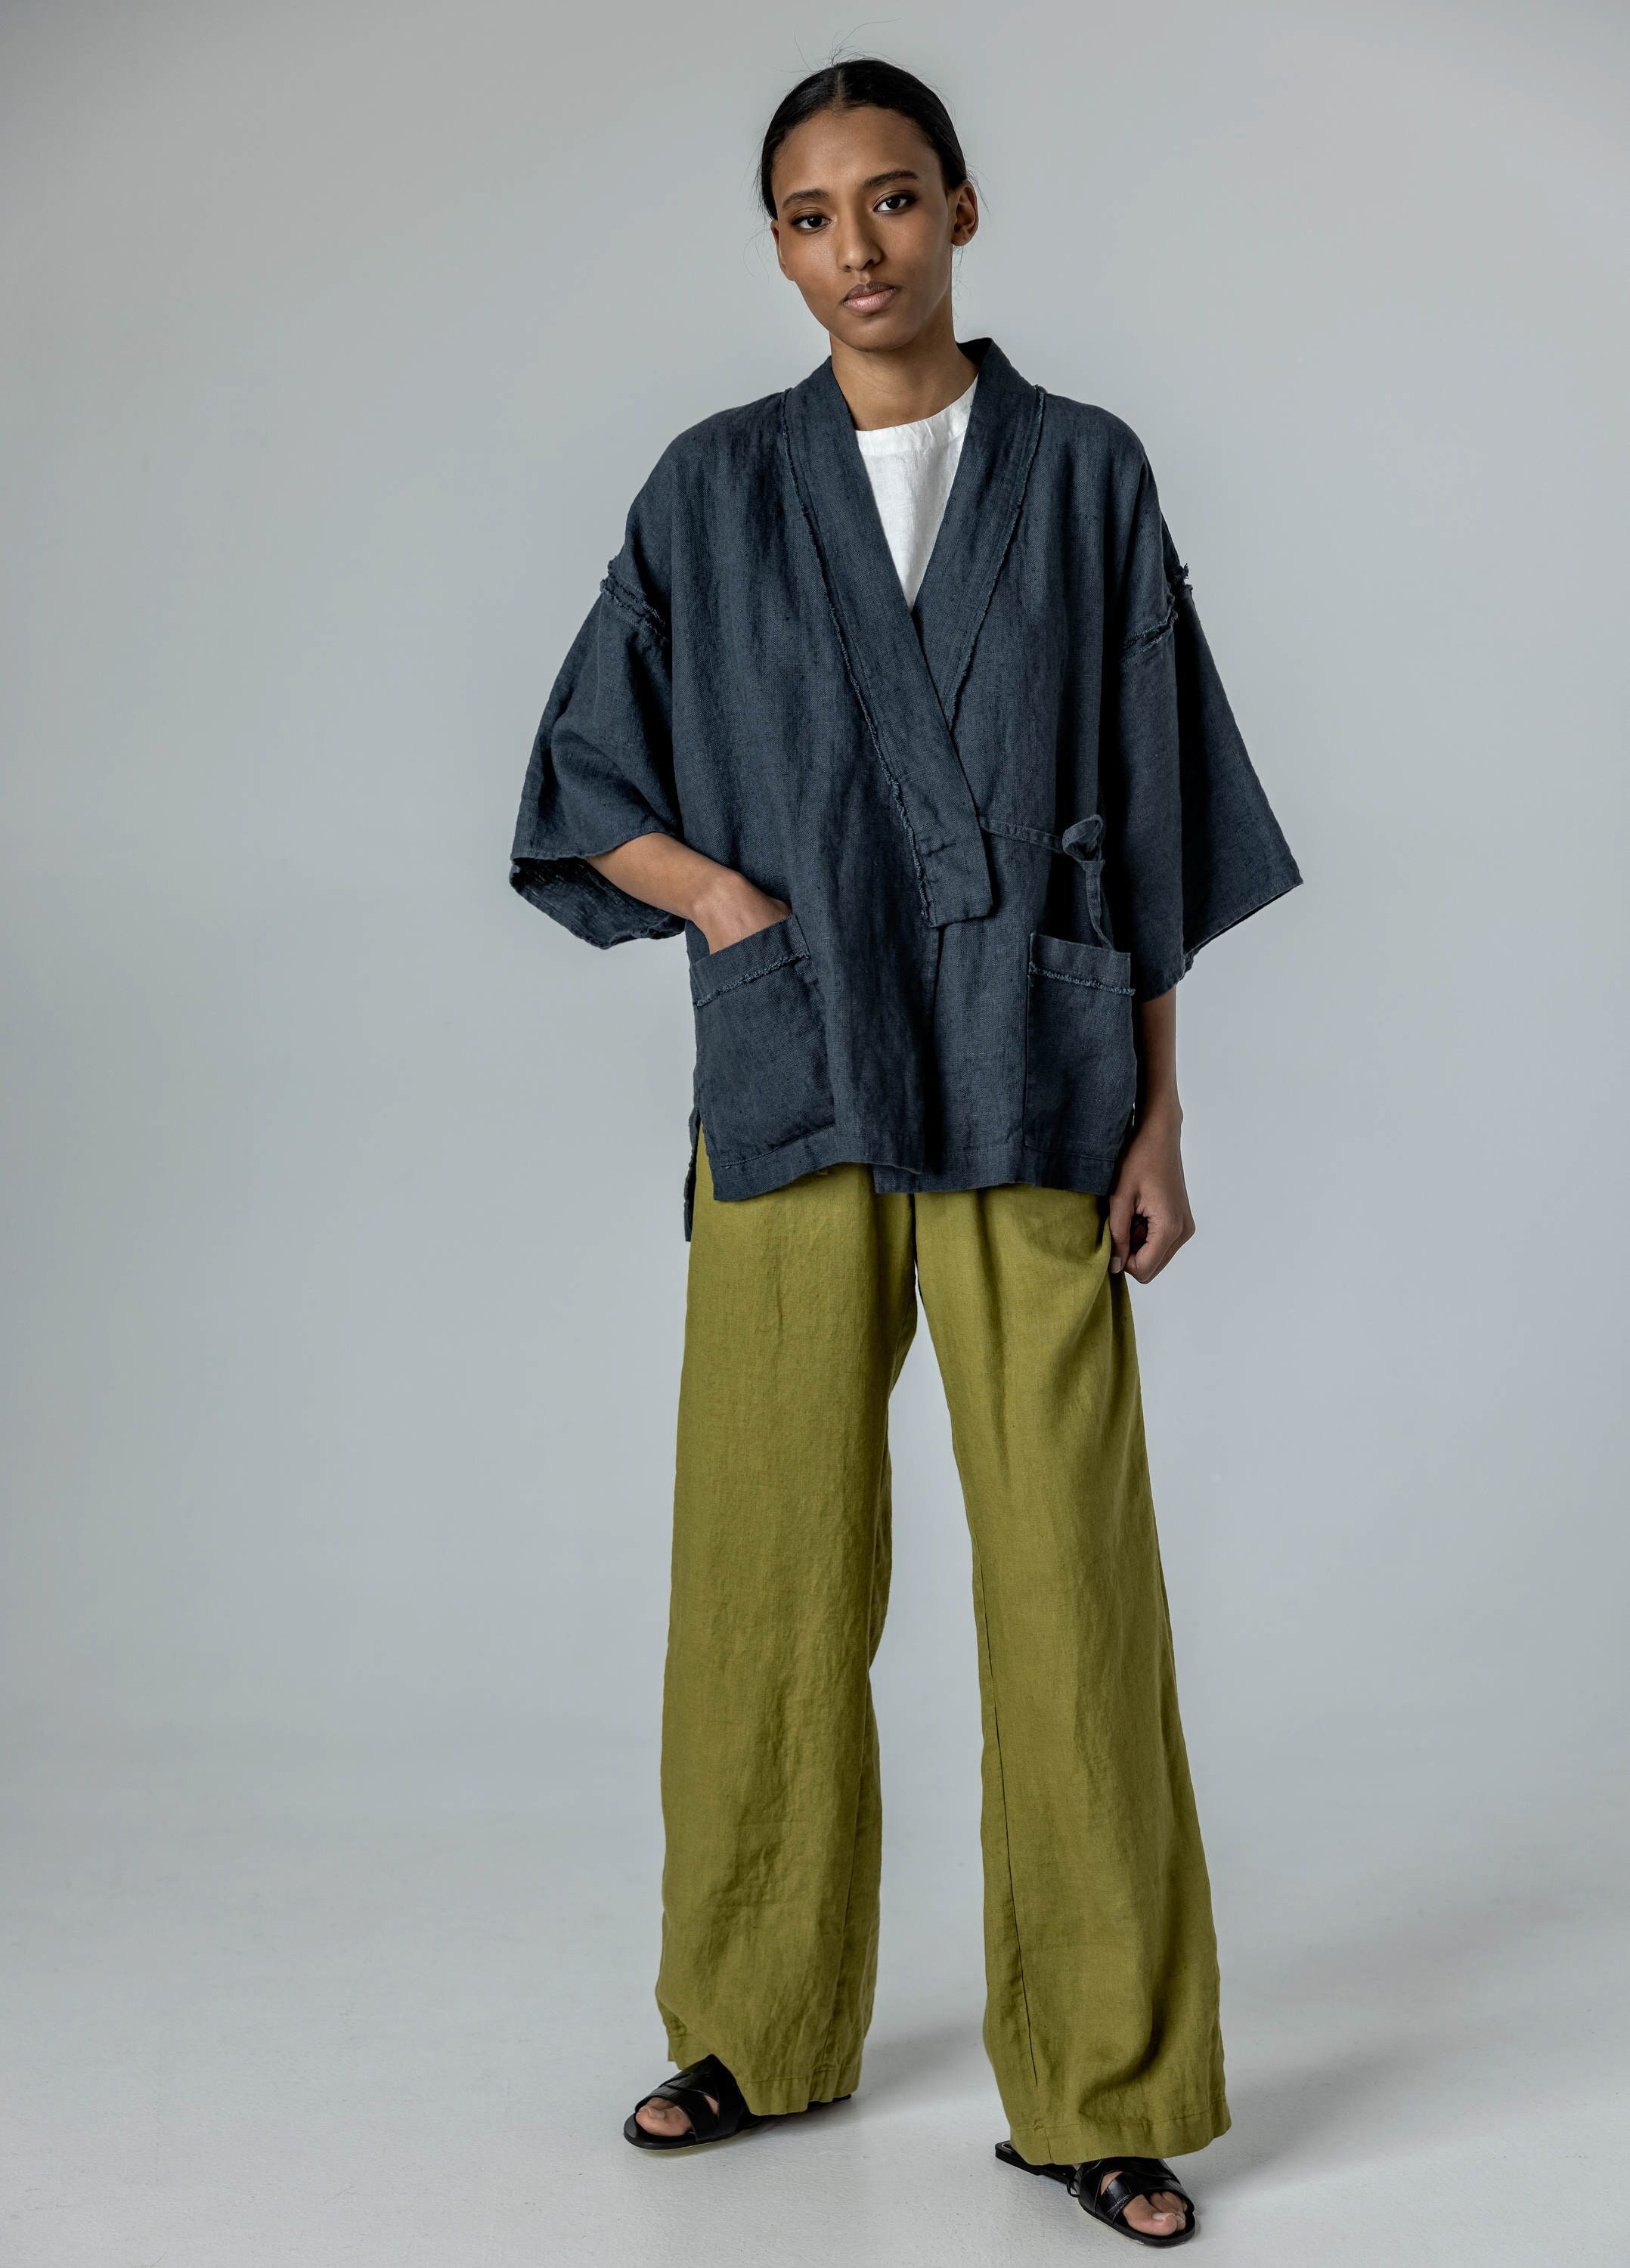 Heavy Linen Haori Jacket With Raw Edge, Tie-string Linen Jacket for Women  With Kimono Sleeves YOI 